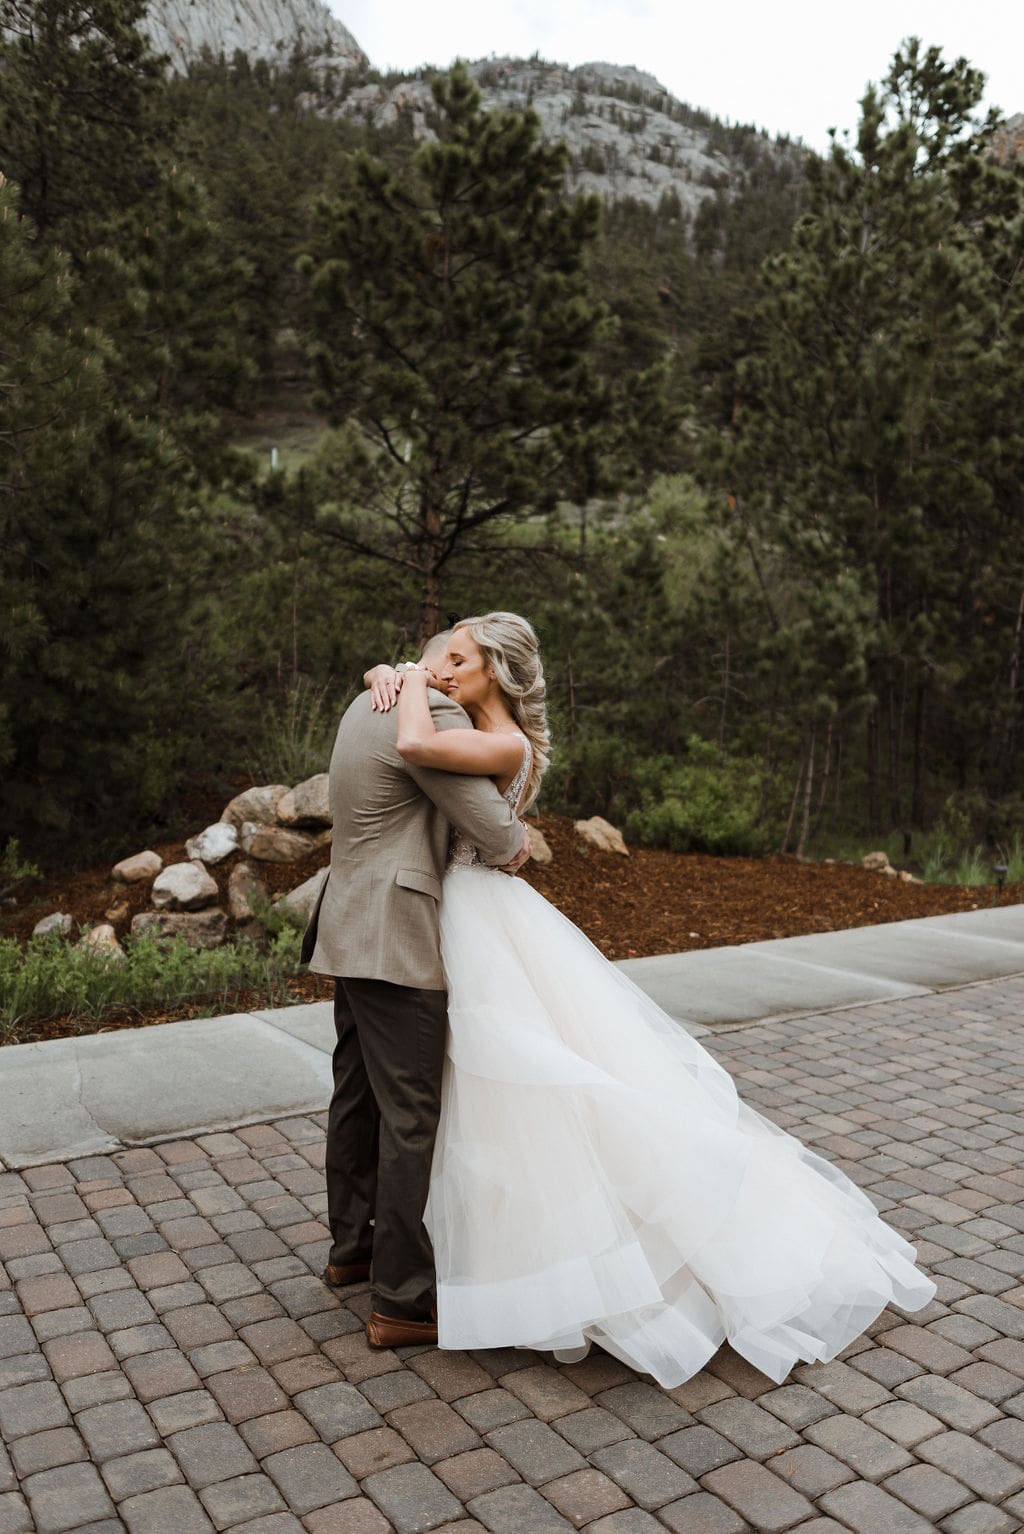 First look between bride and groom at Della Terra in Estes Park